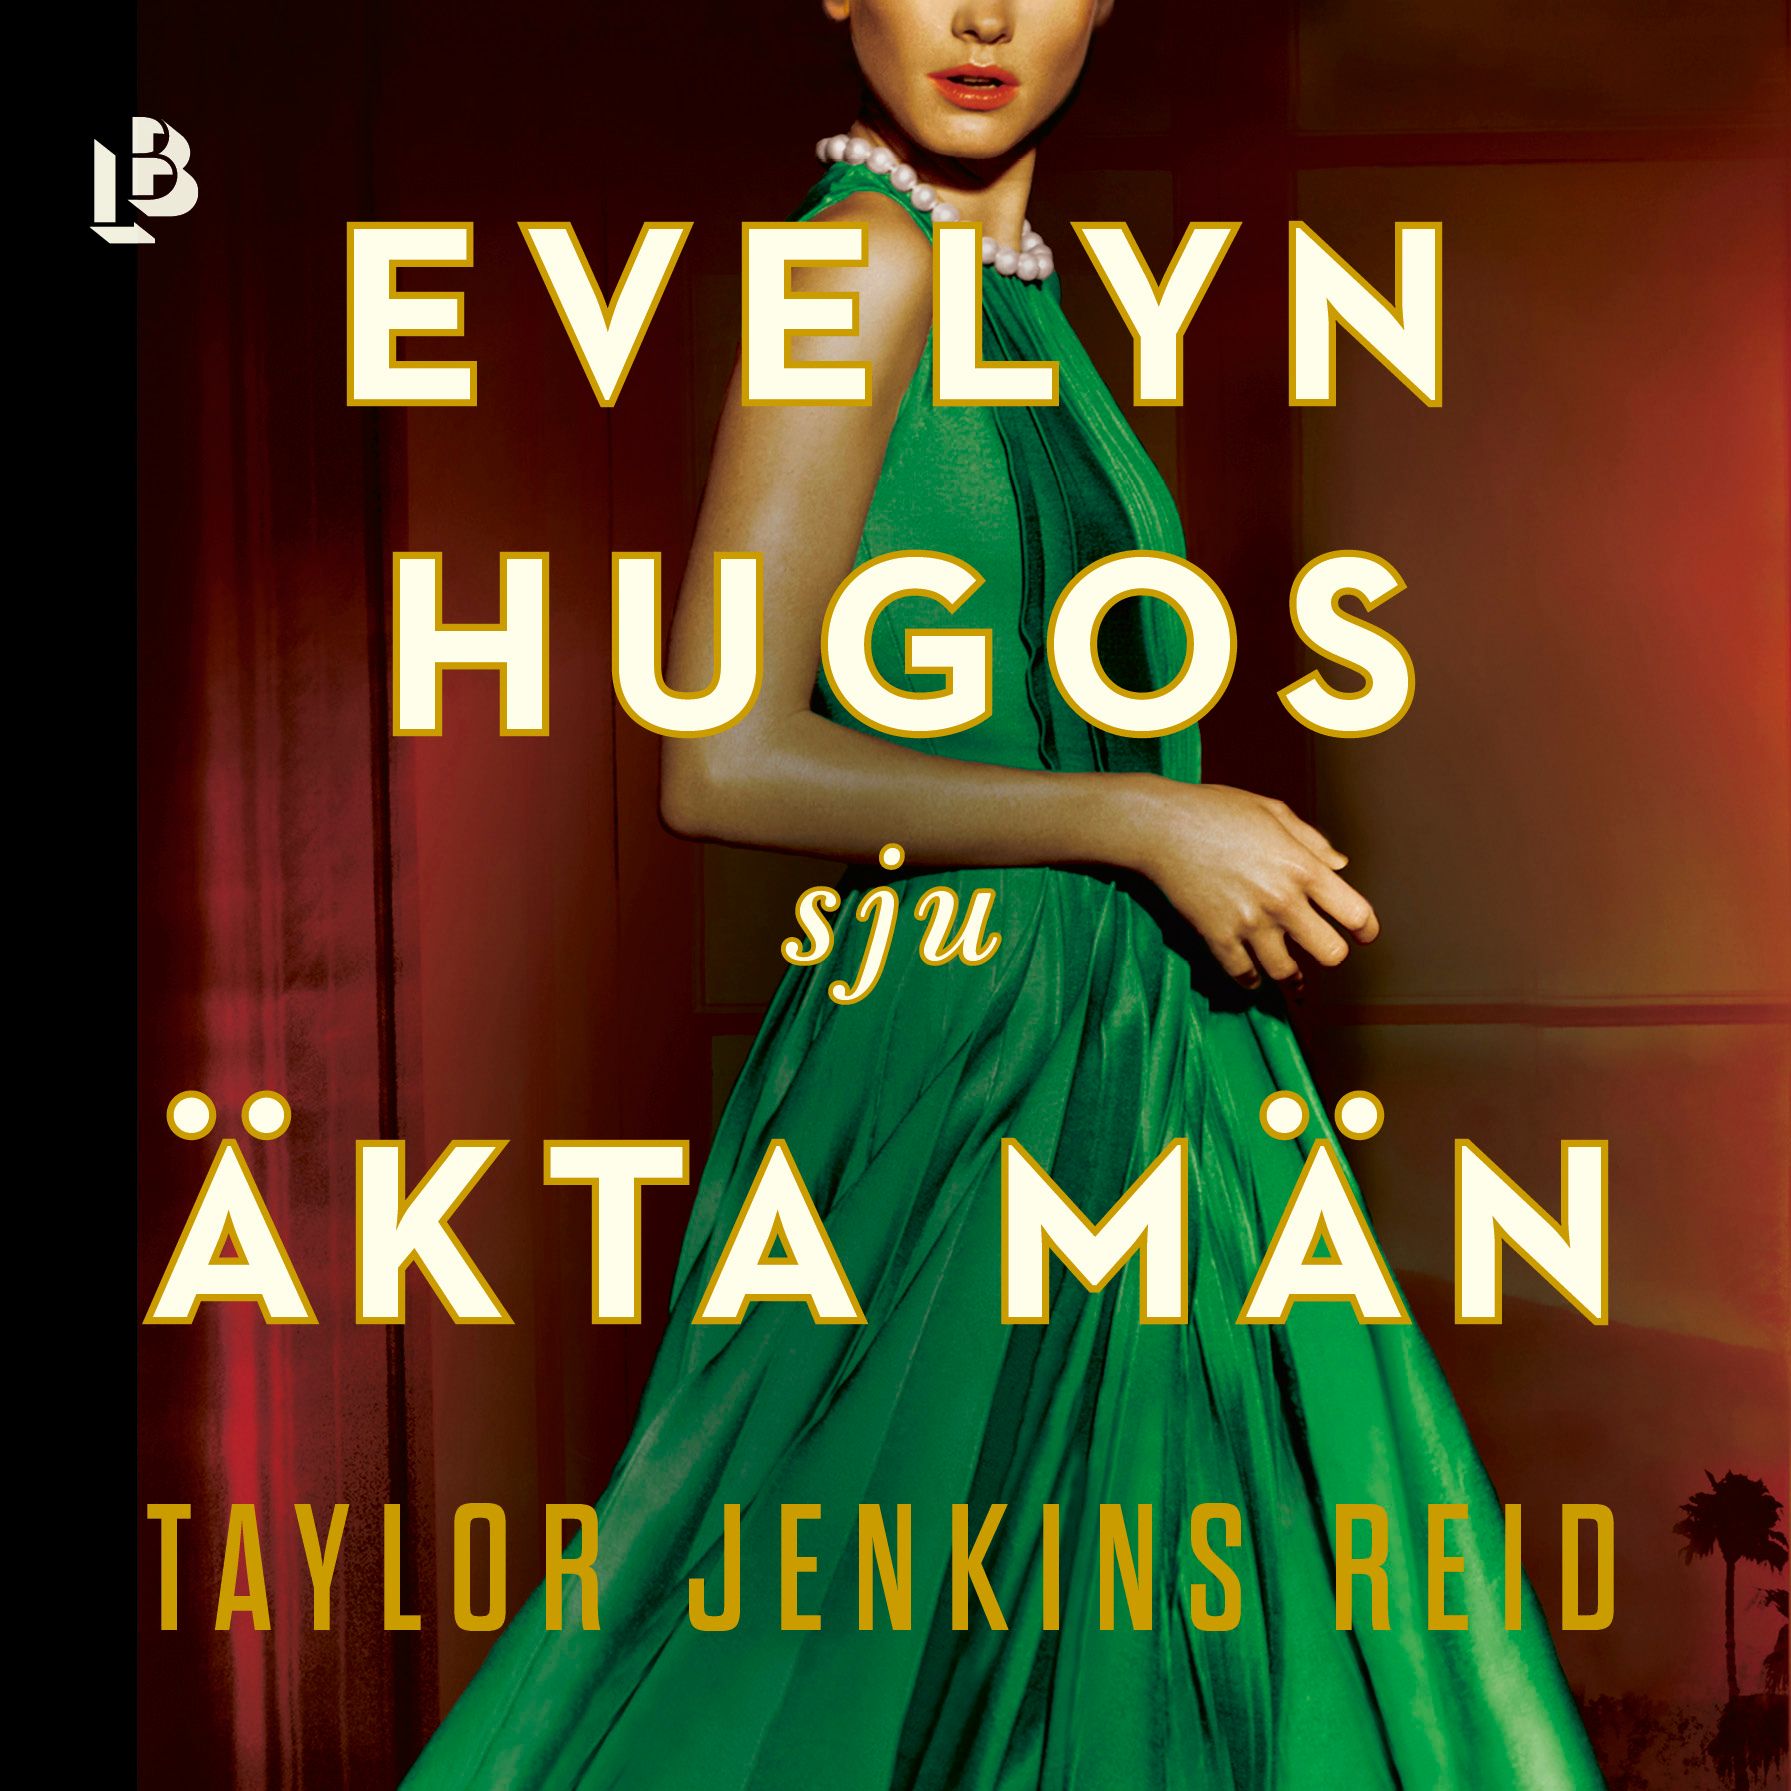 Evelyn Hugos sju äkta män, ljudbok av Taylor Jenkins Reid